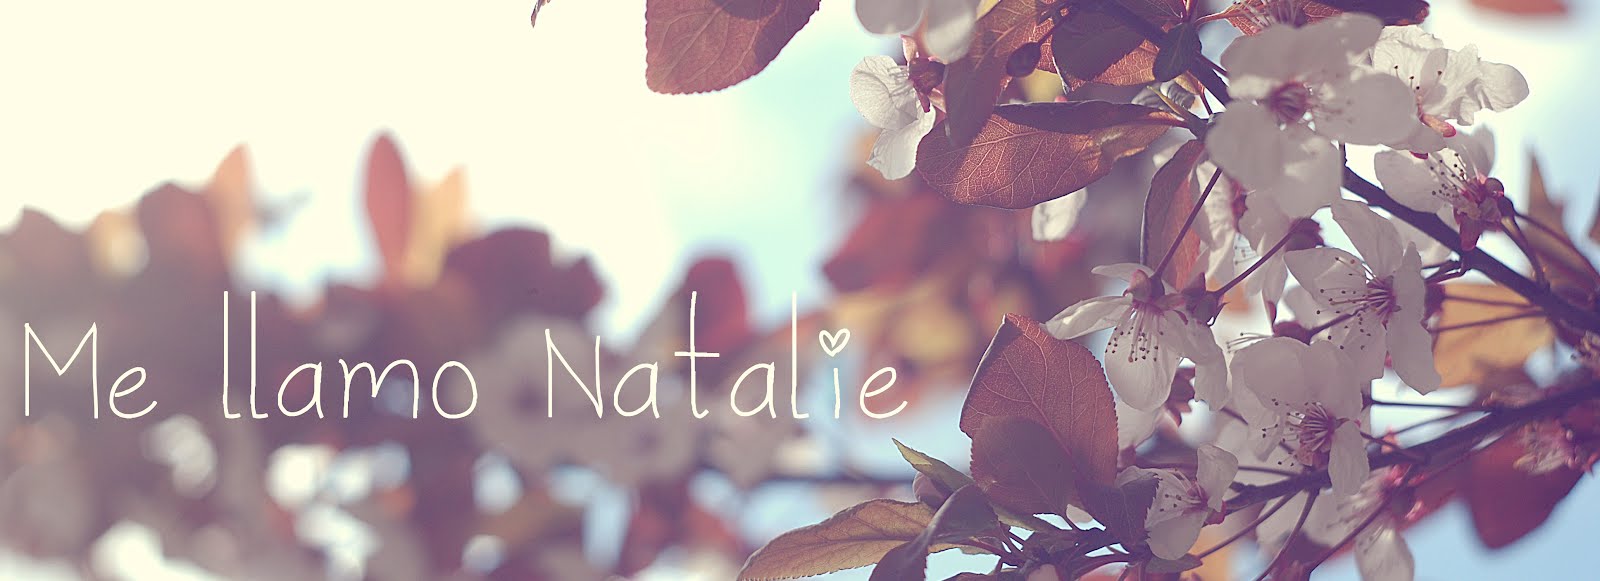 Me llamo Natalie